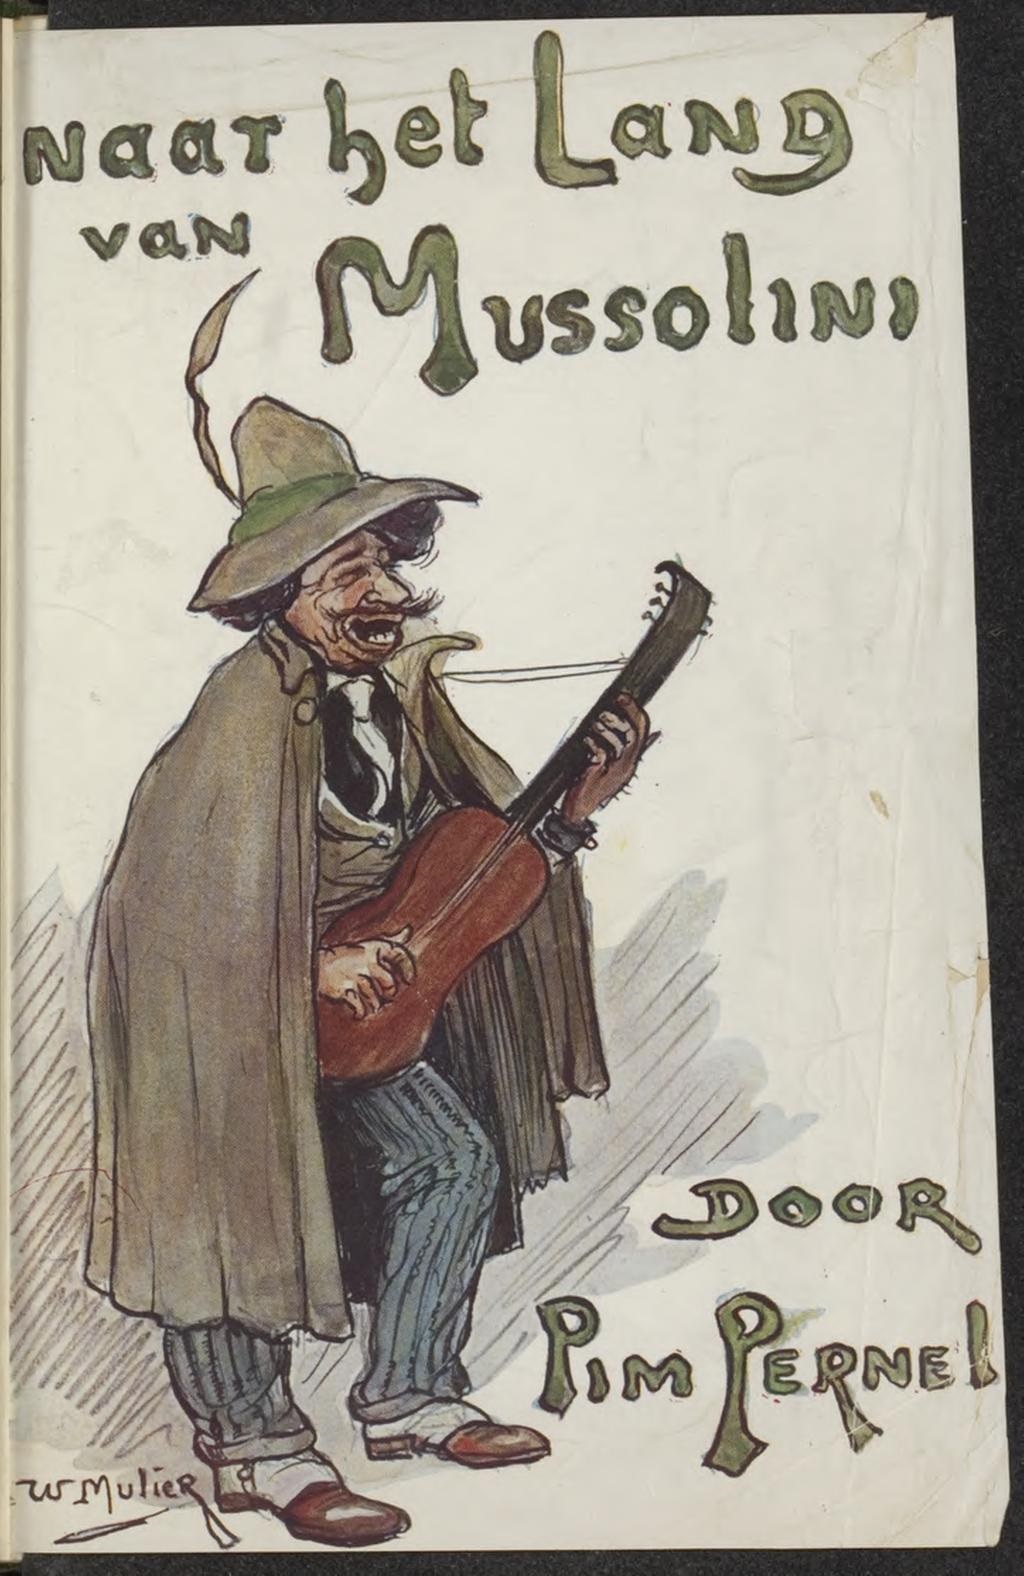 The cover of Naar het land van Mussolini, Pim Pernel, 1926.